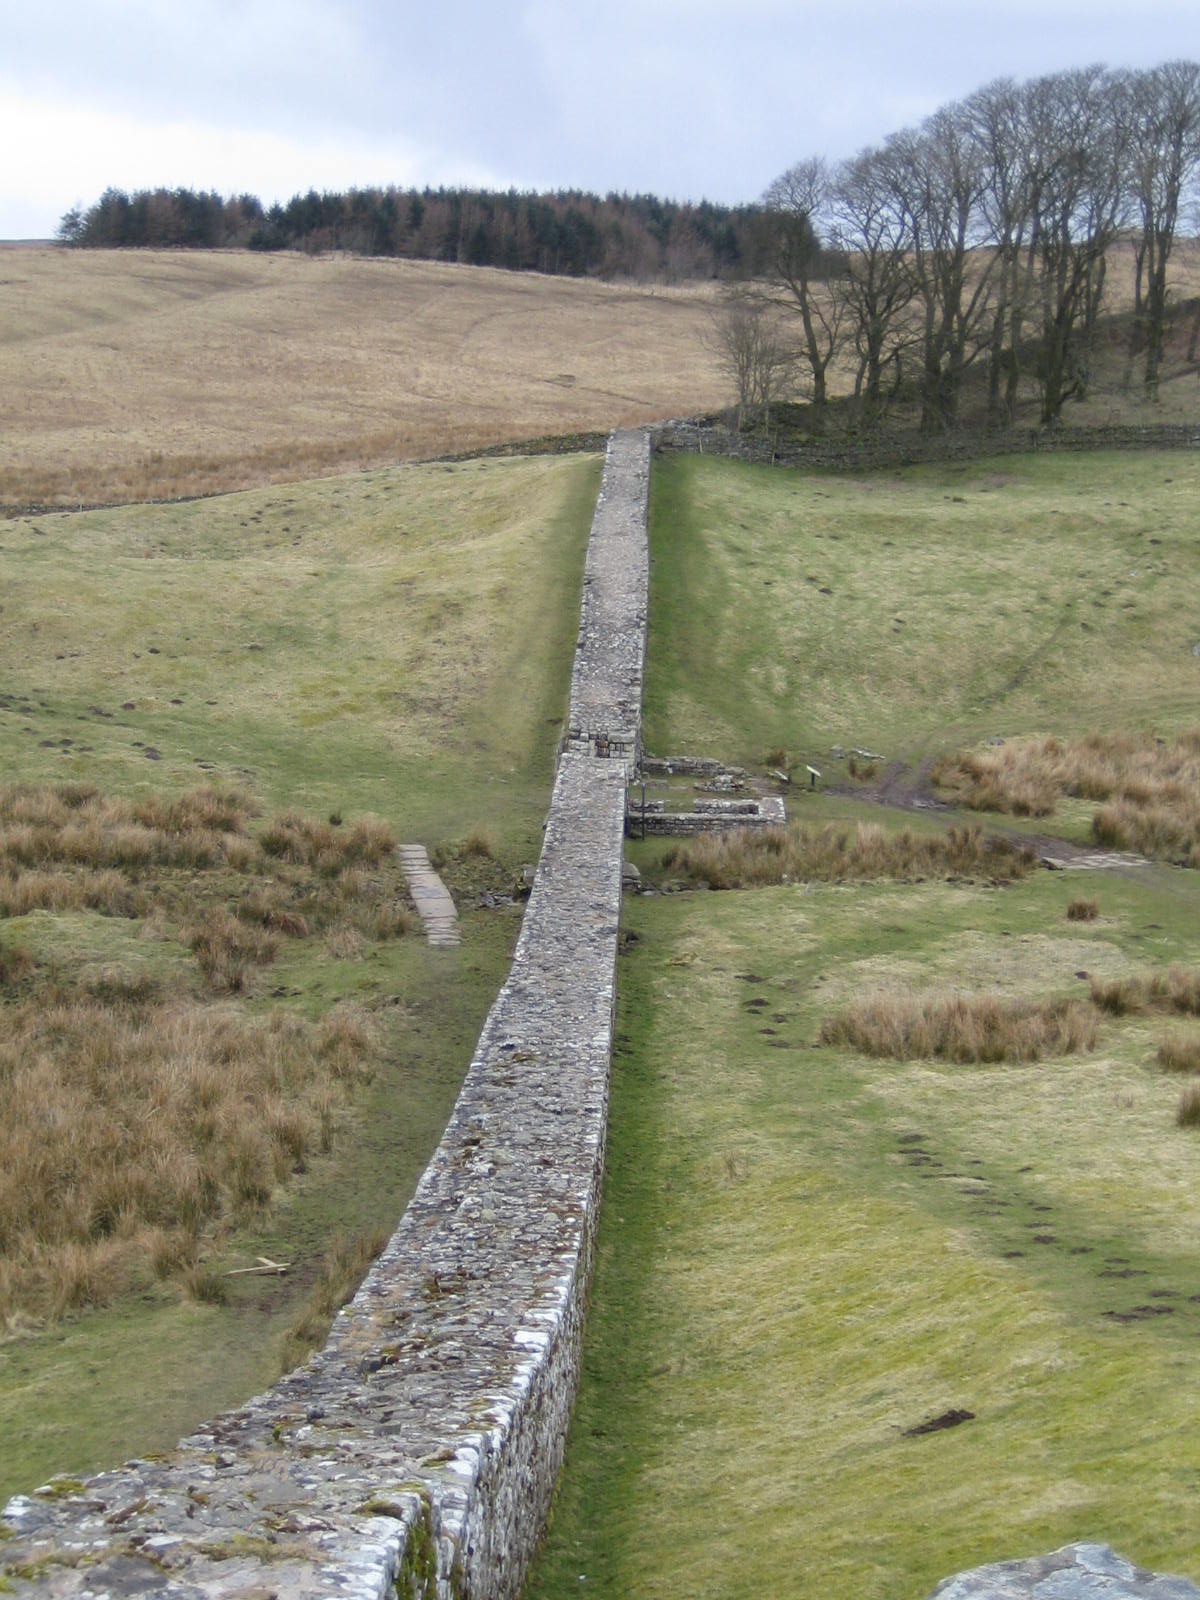 The narrow wall